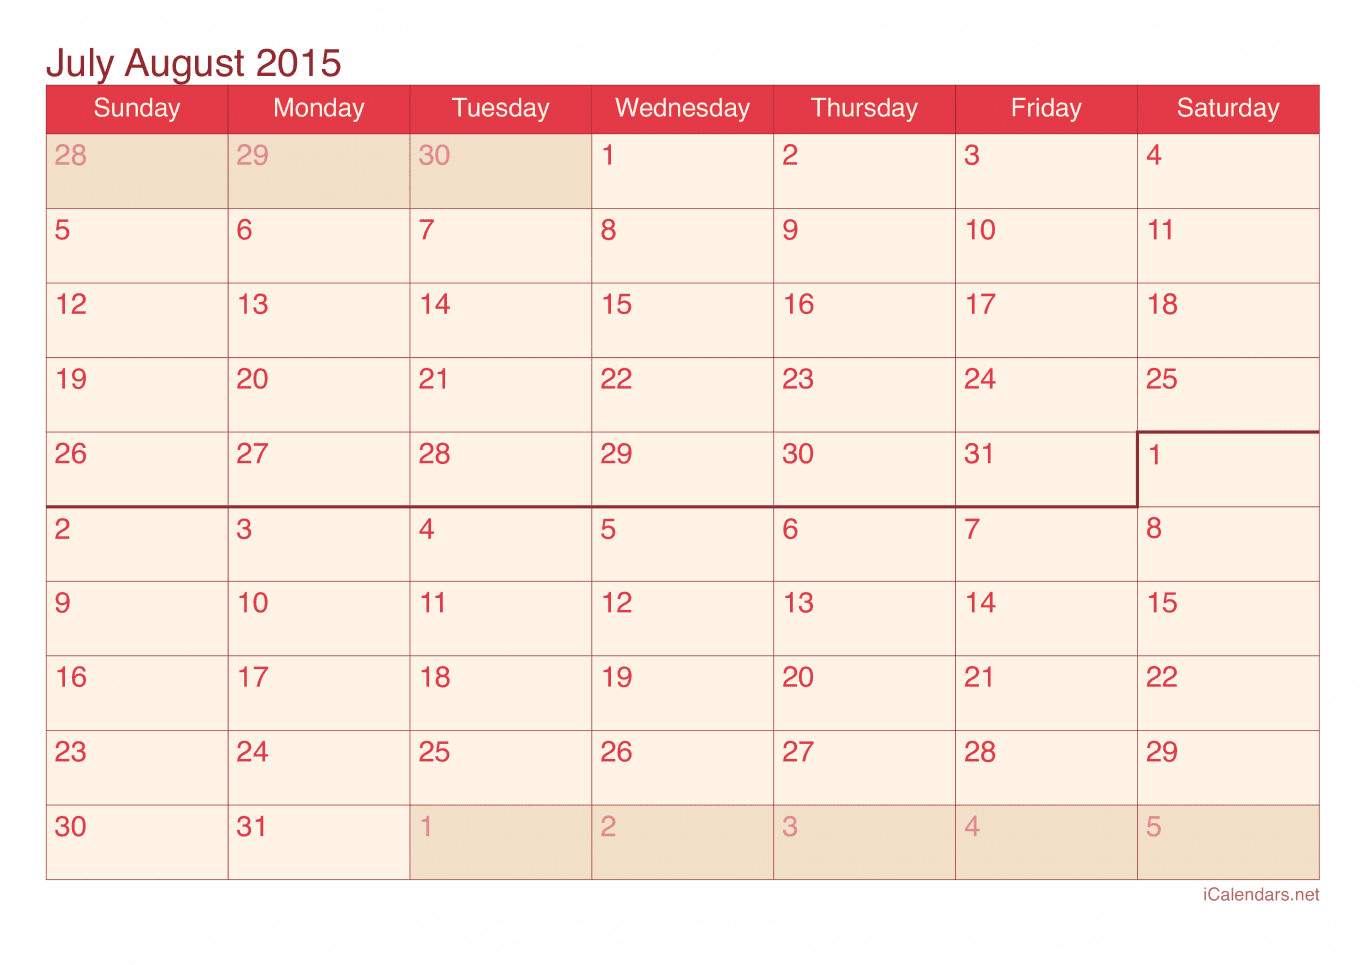 2015 July August Calendar - Cherry